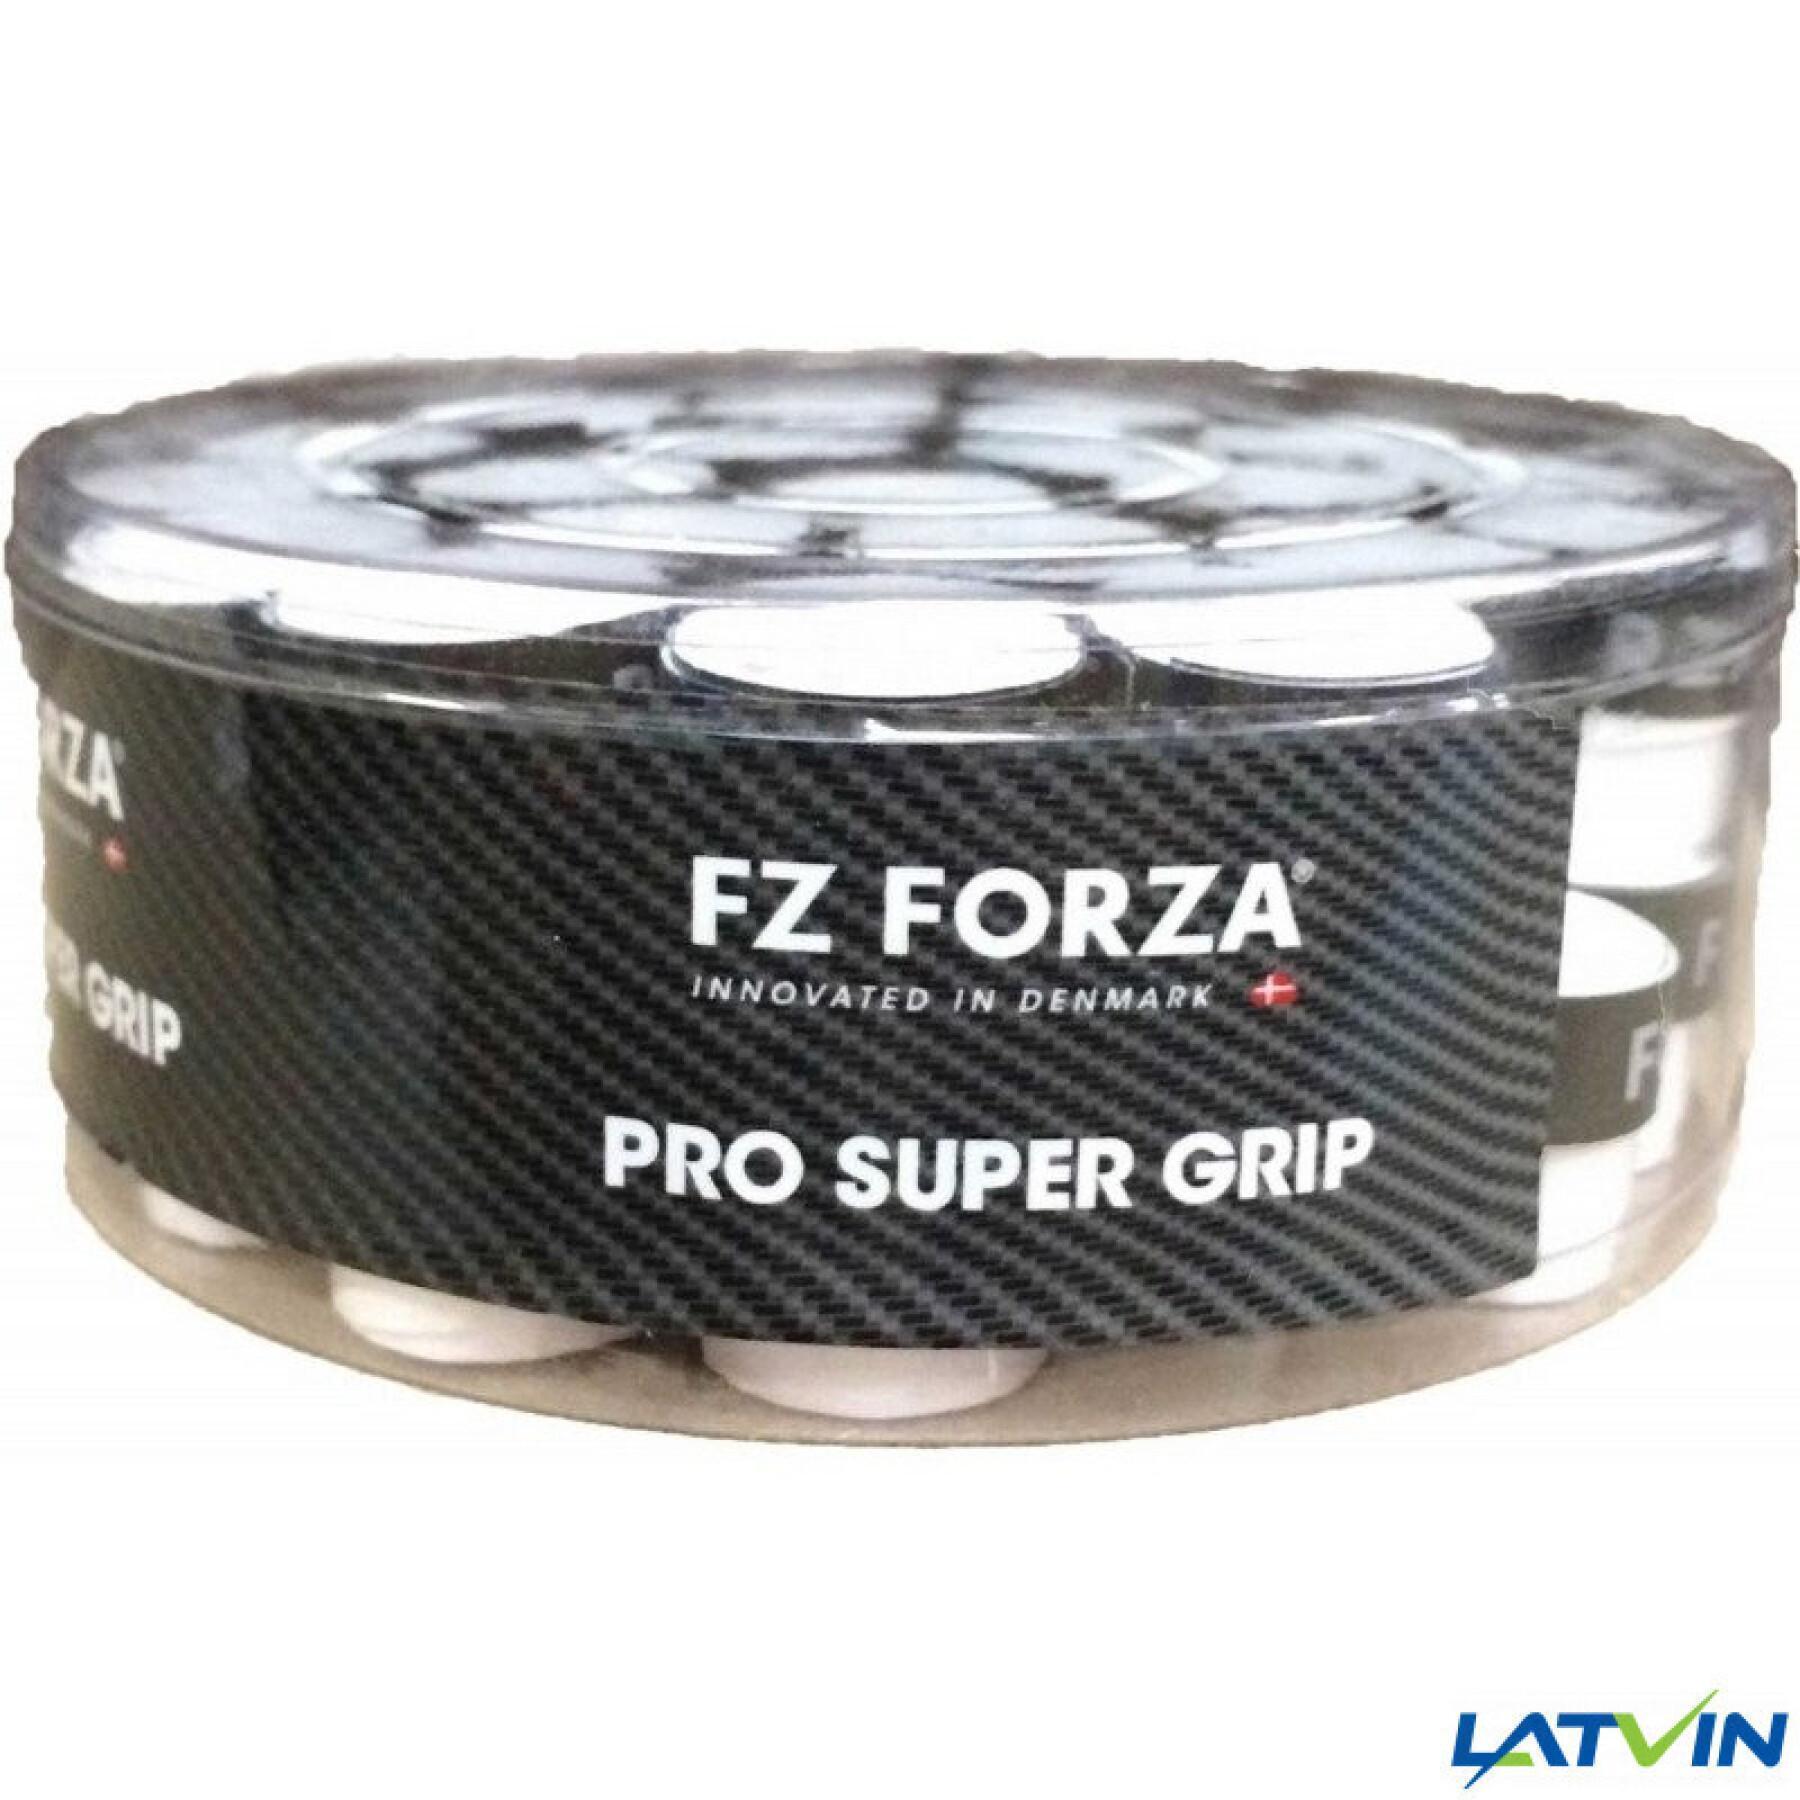 Packung mit 40 Dosen Supergrip FZ Forza